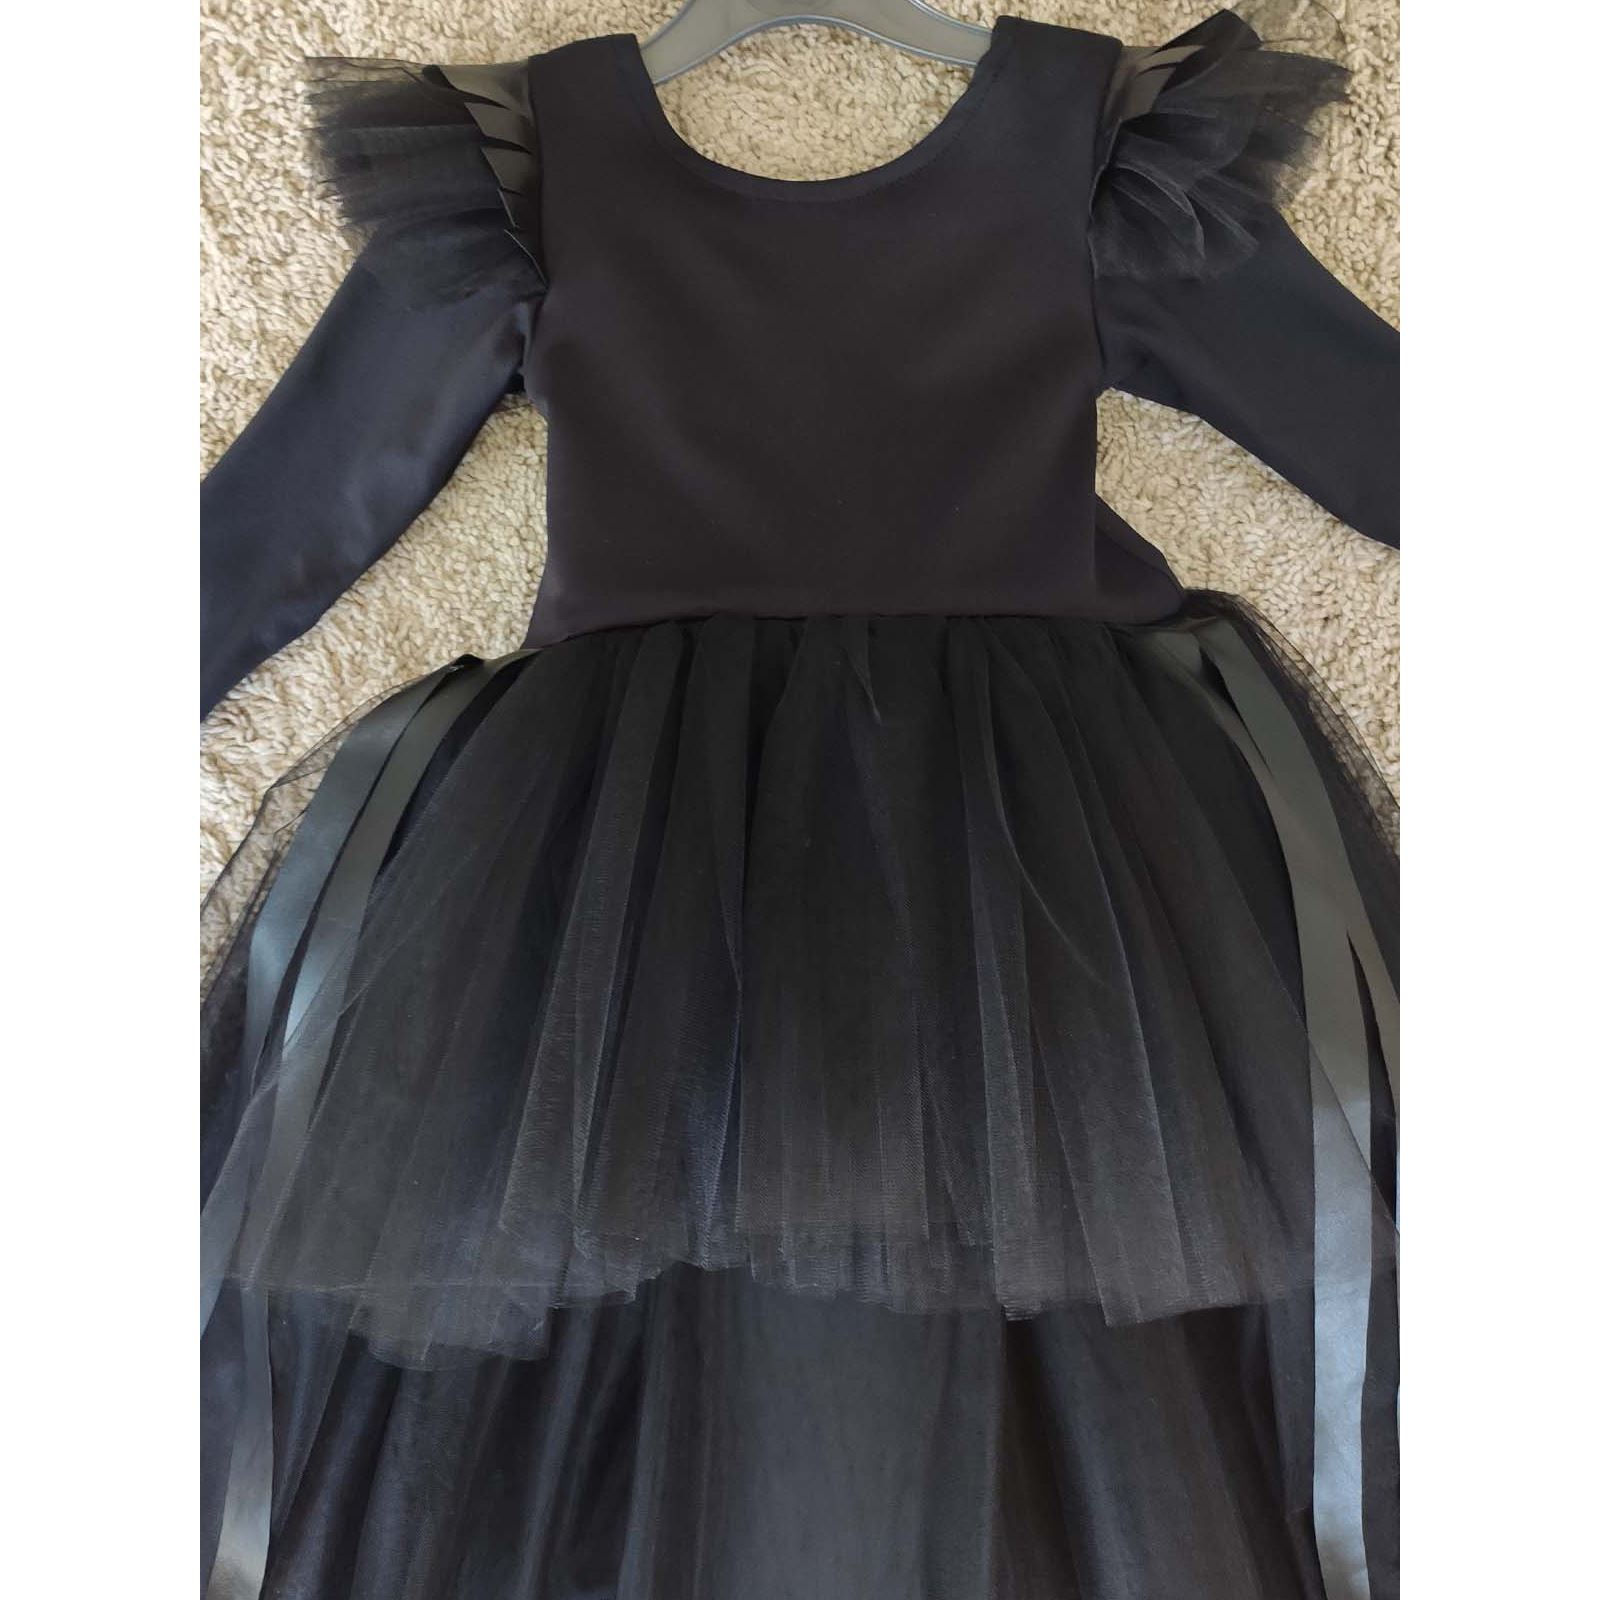 Shecco Babba Deri Detaylı Tüllü Bandanalı Abiye Elbise, Parti Elbisesi, Doğum Günü Elbisesi Siyah